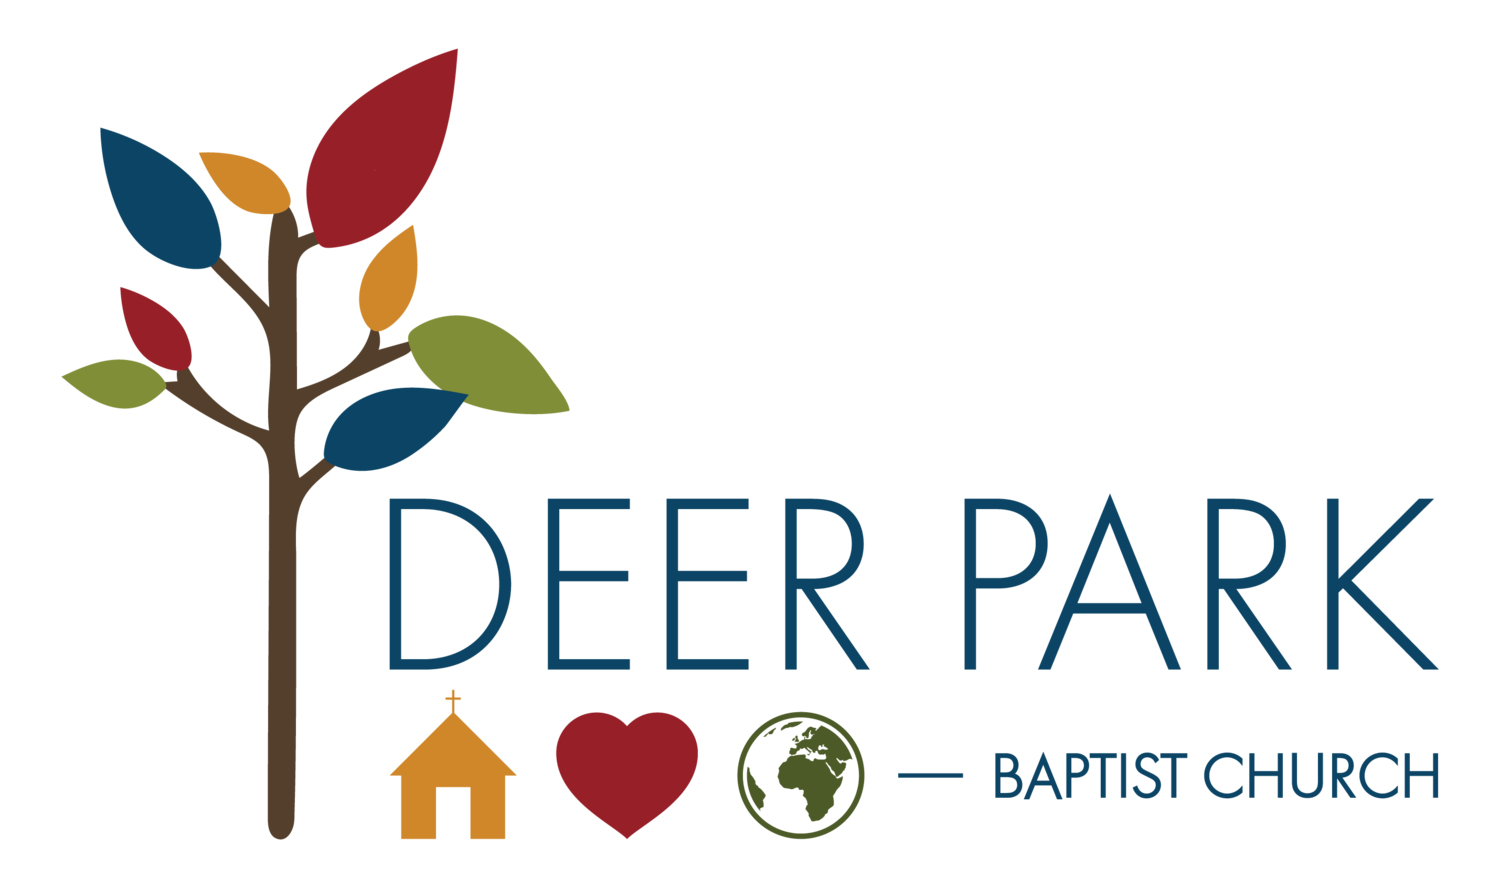 Deer Park Baptist Church